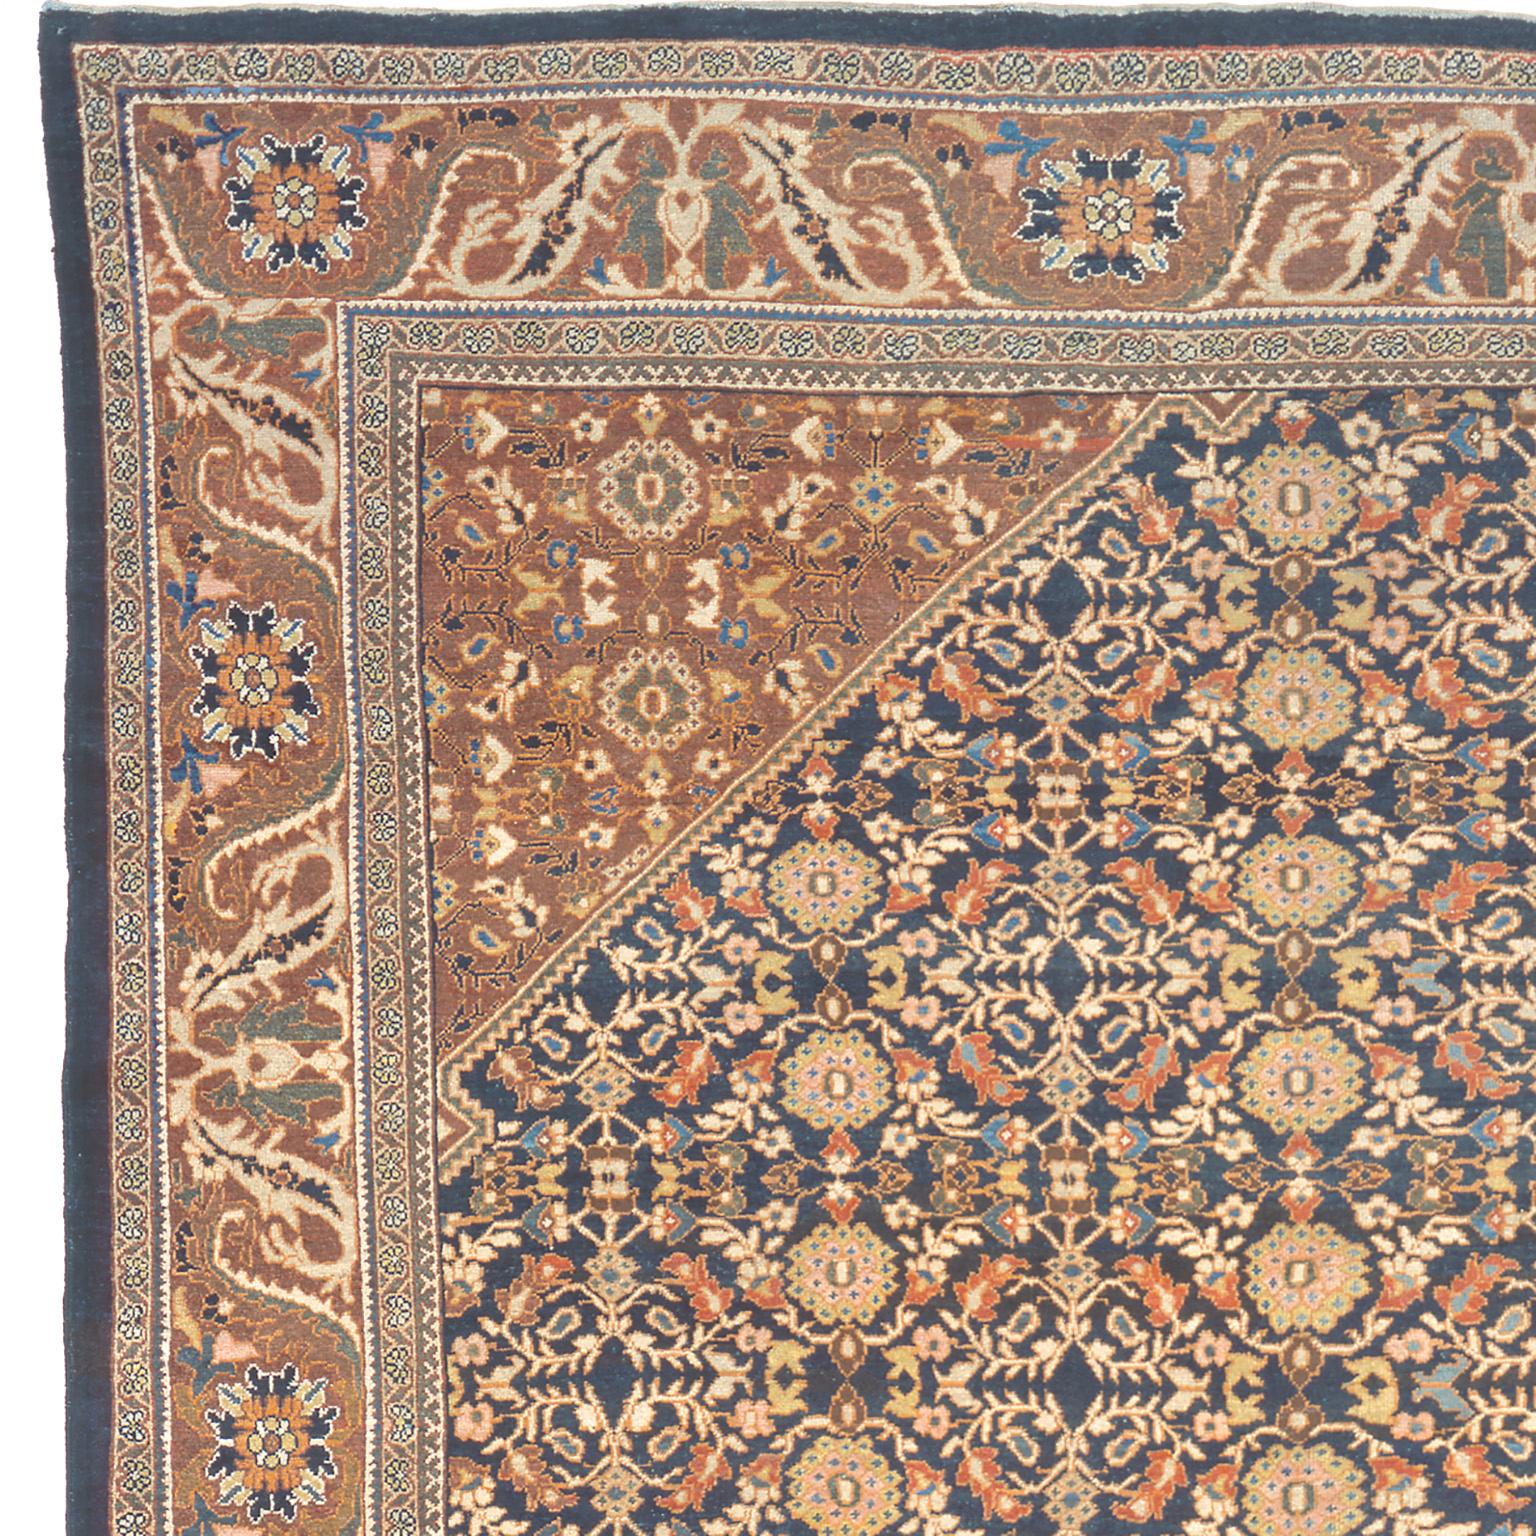 Nord-ouest de la Perse, vers 1890
Tissé à la main
Taille : 714 x 429 cm (23'5